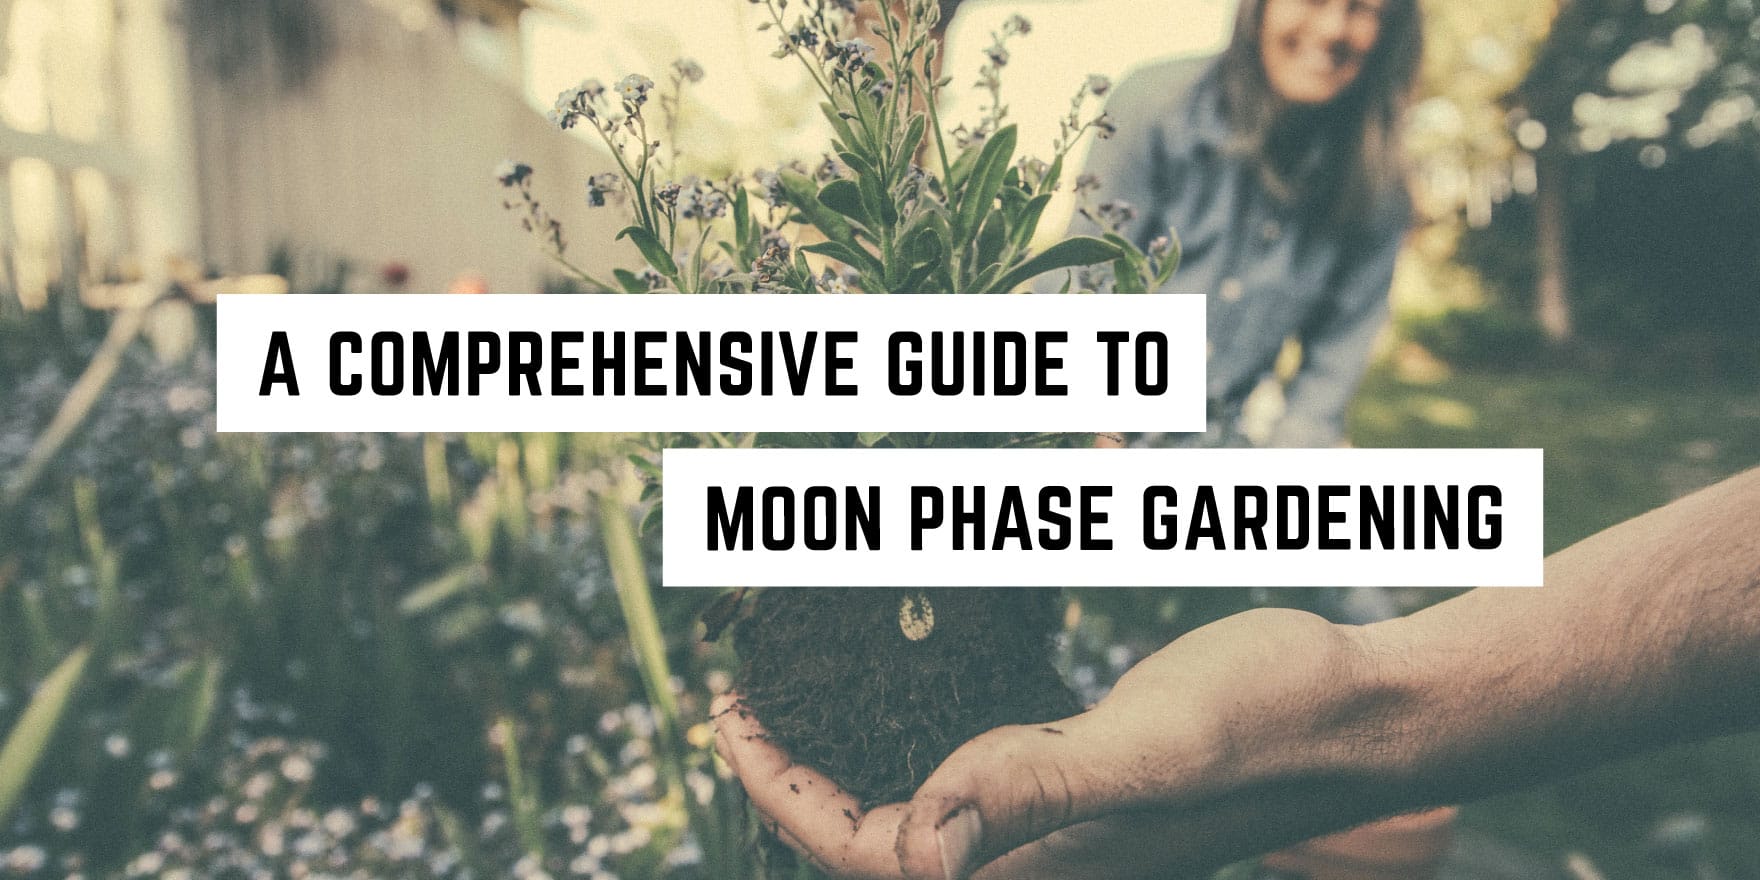 Moon Phase Gardening: A Calendar